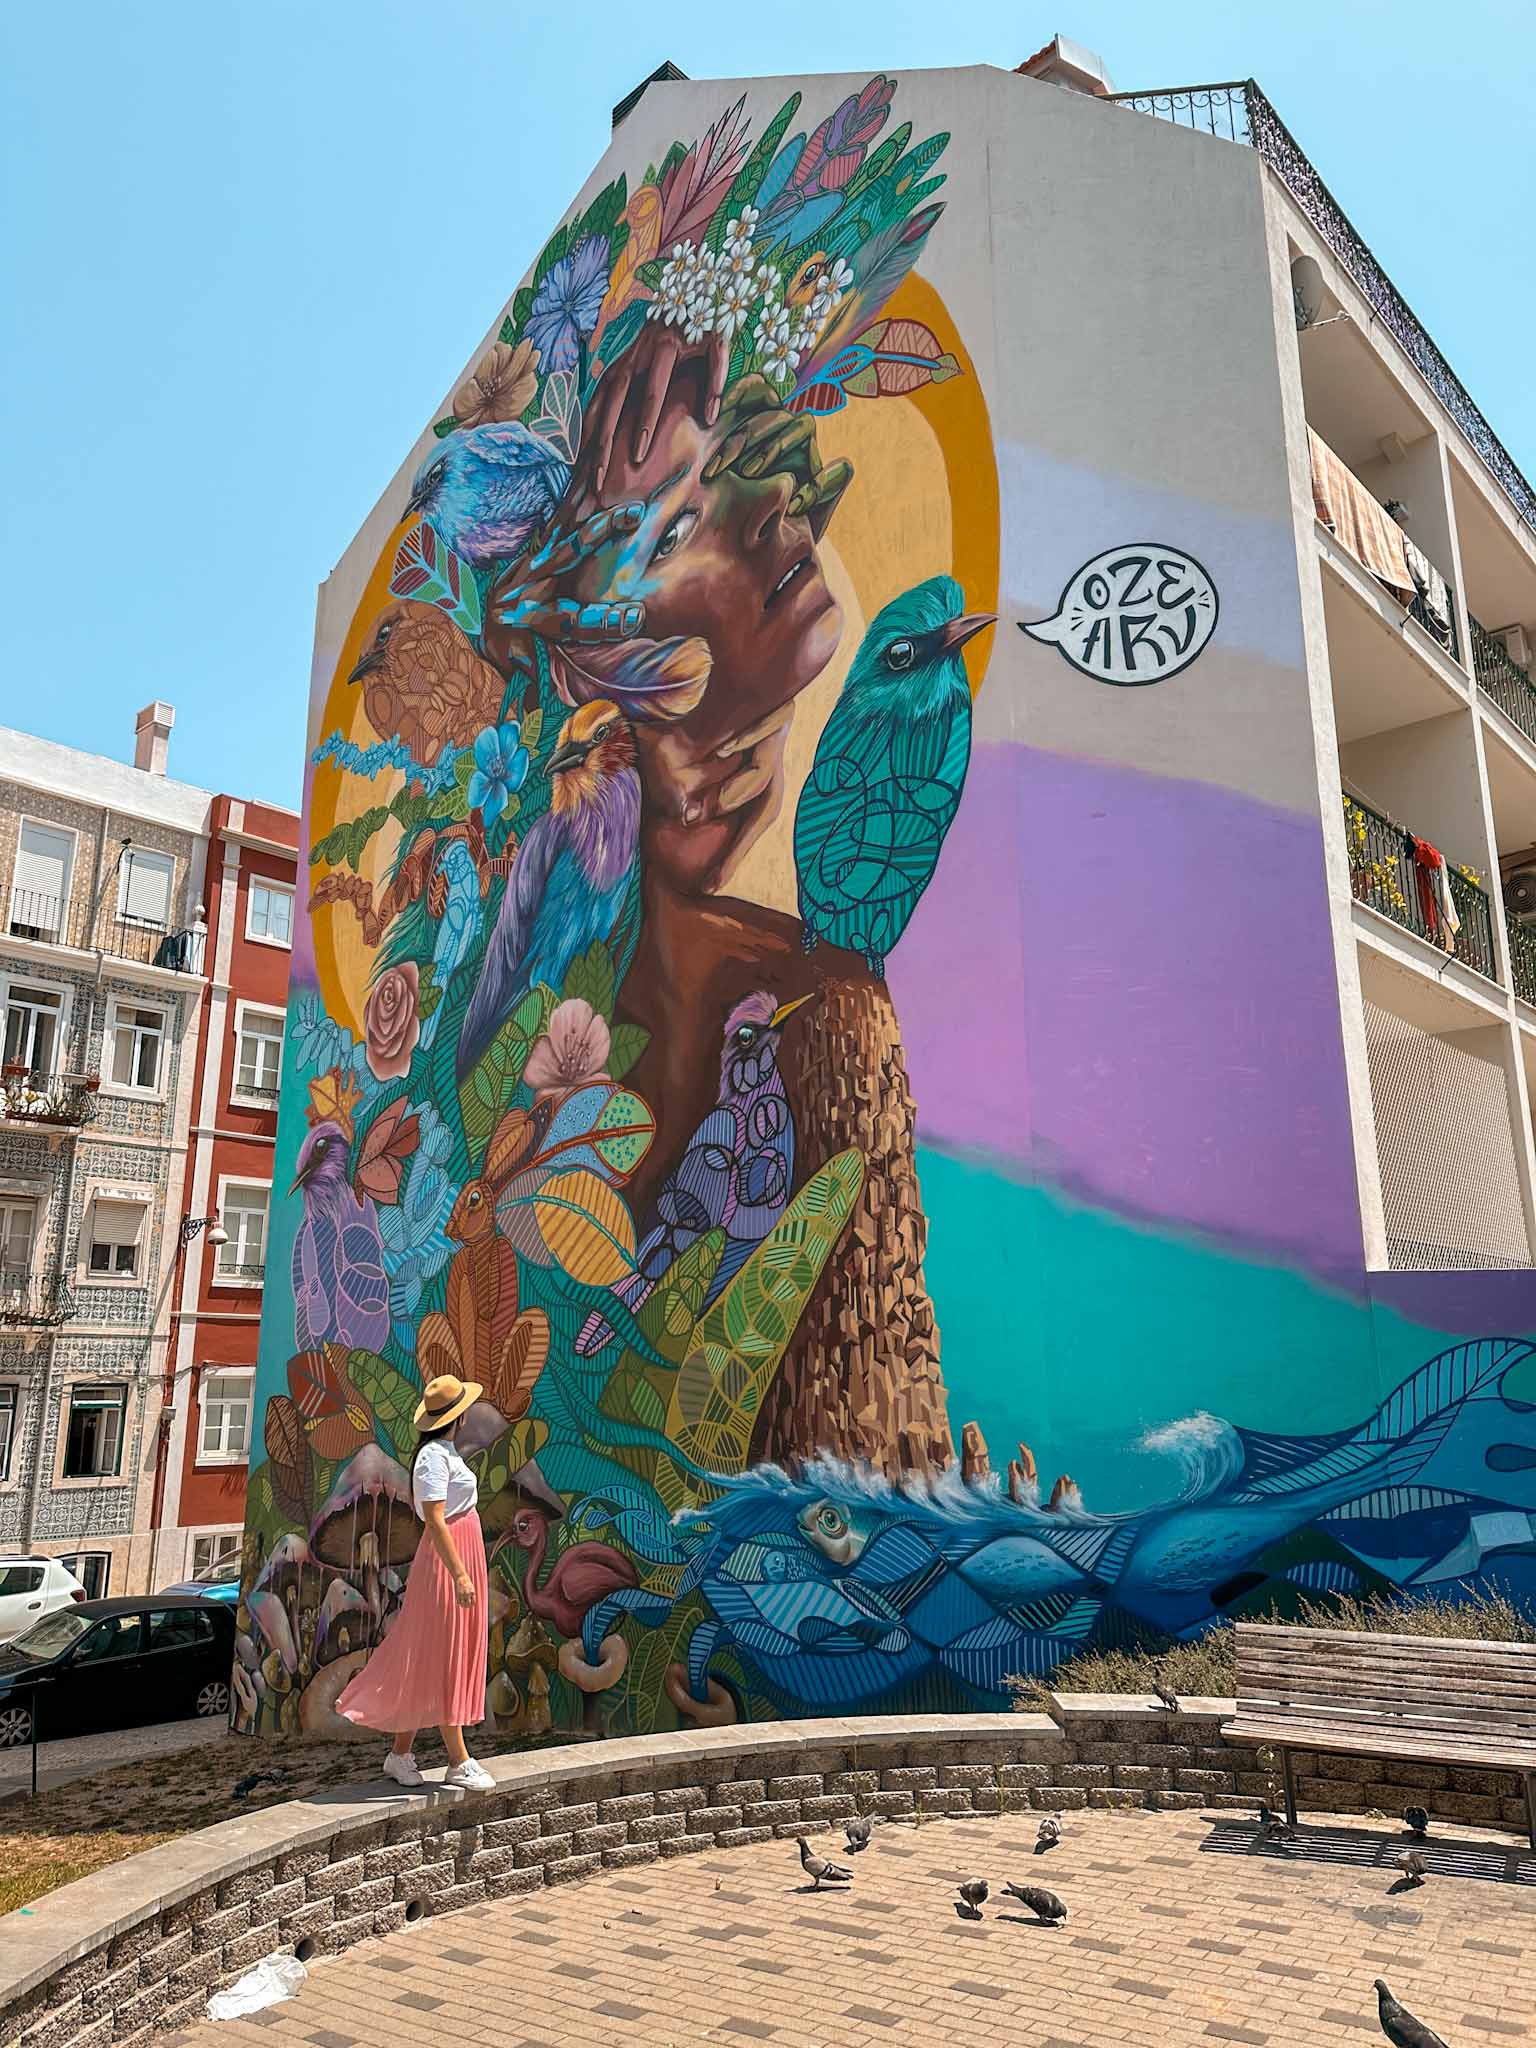 Best Instagram photo spots in Lisbon, Portugal - Street art and flower tunnel in Graça